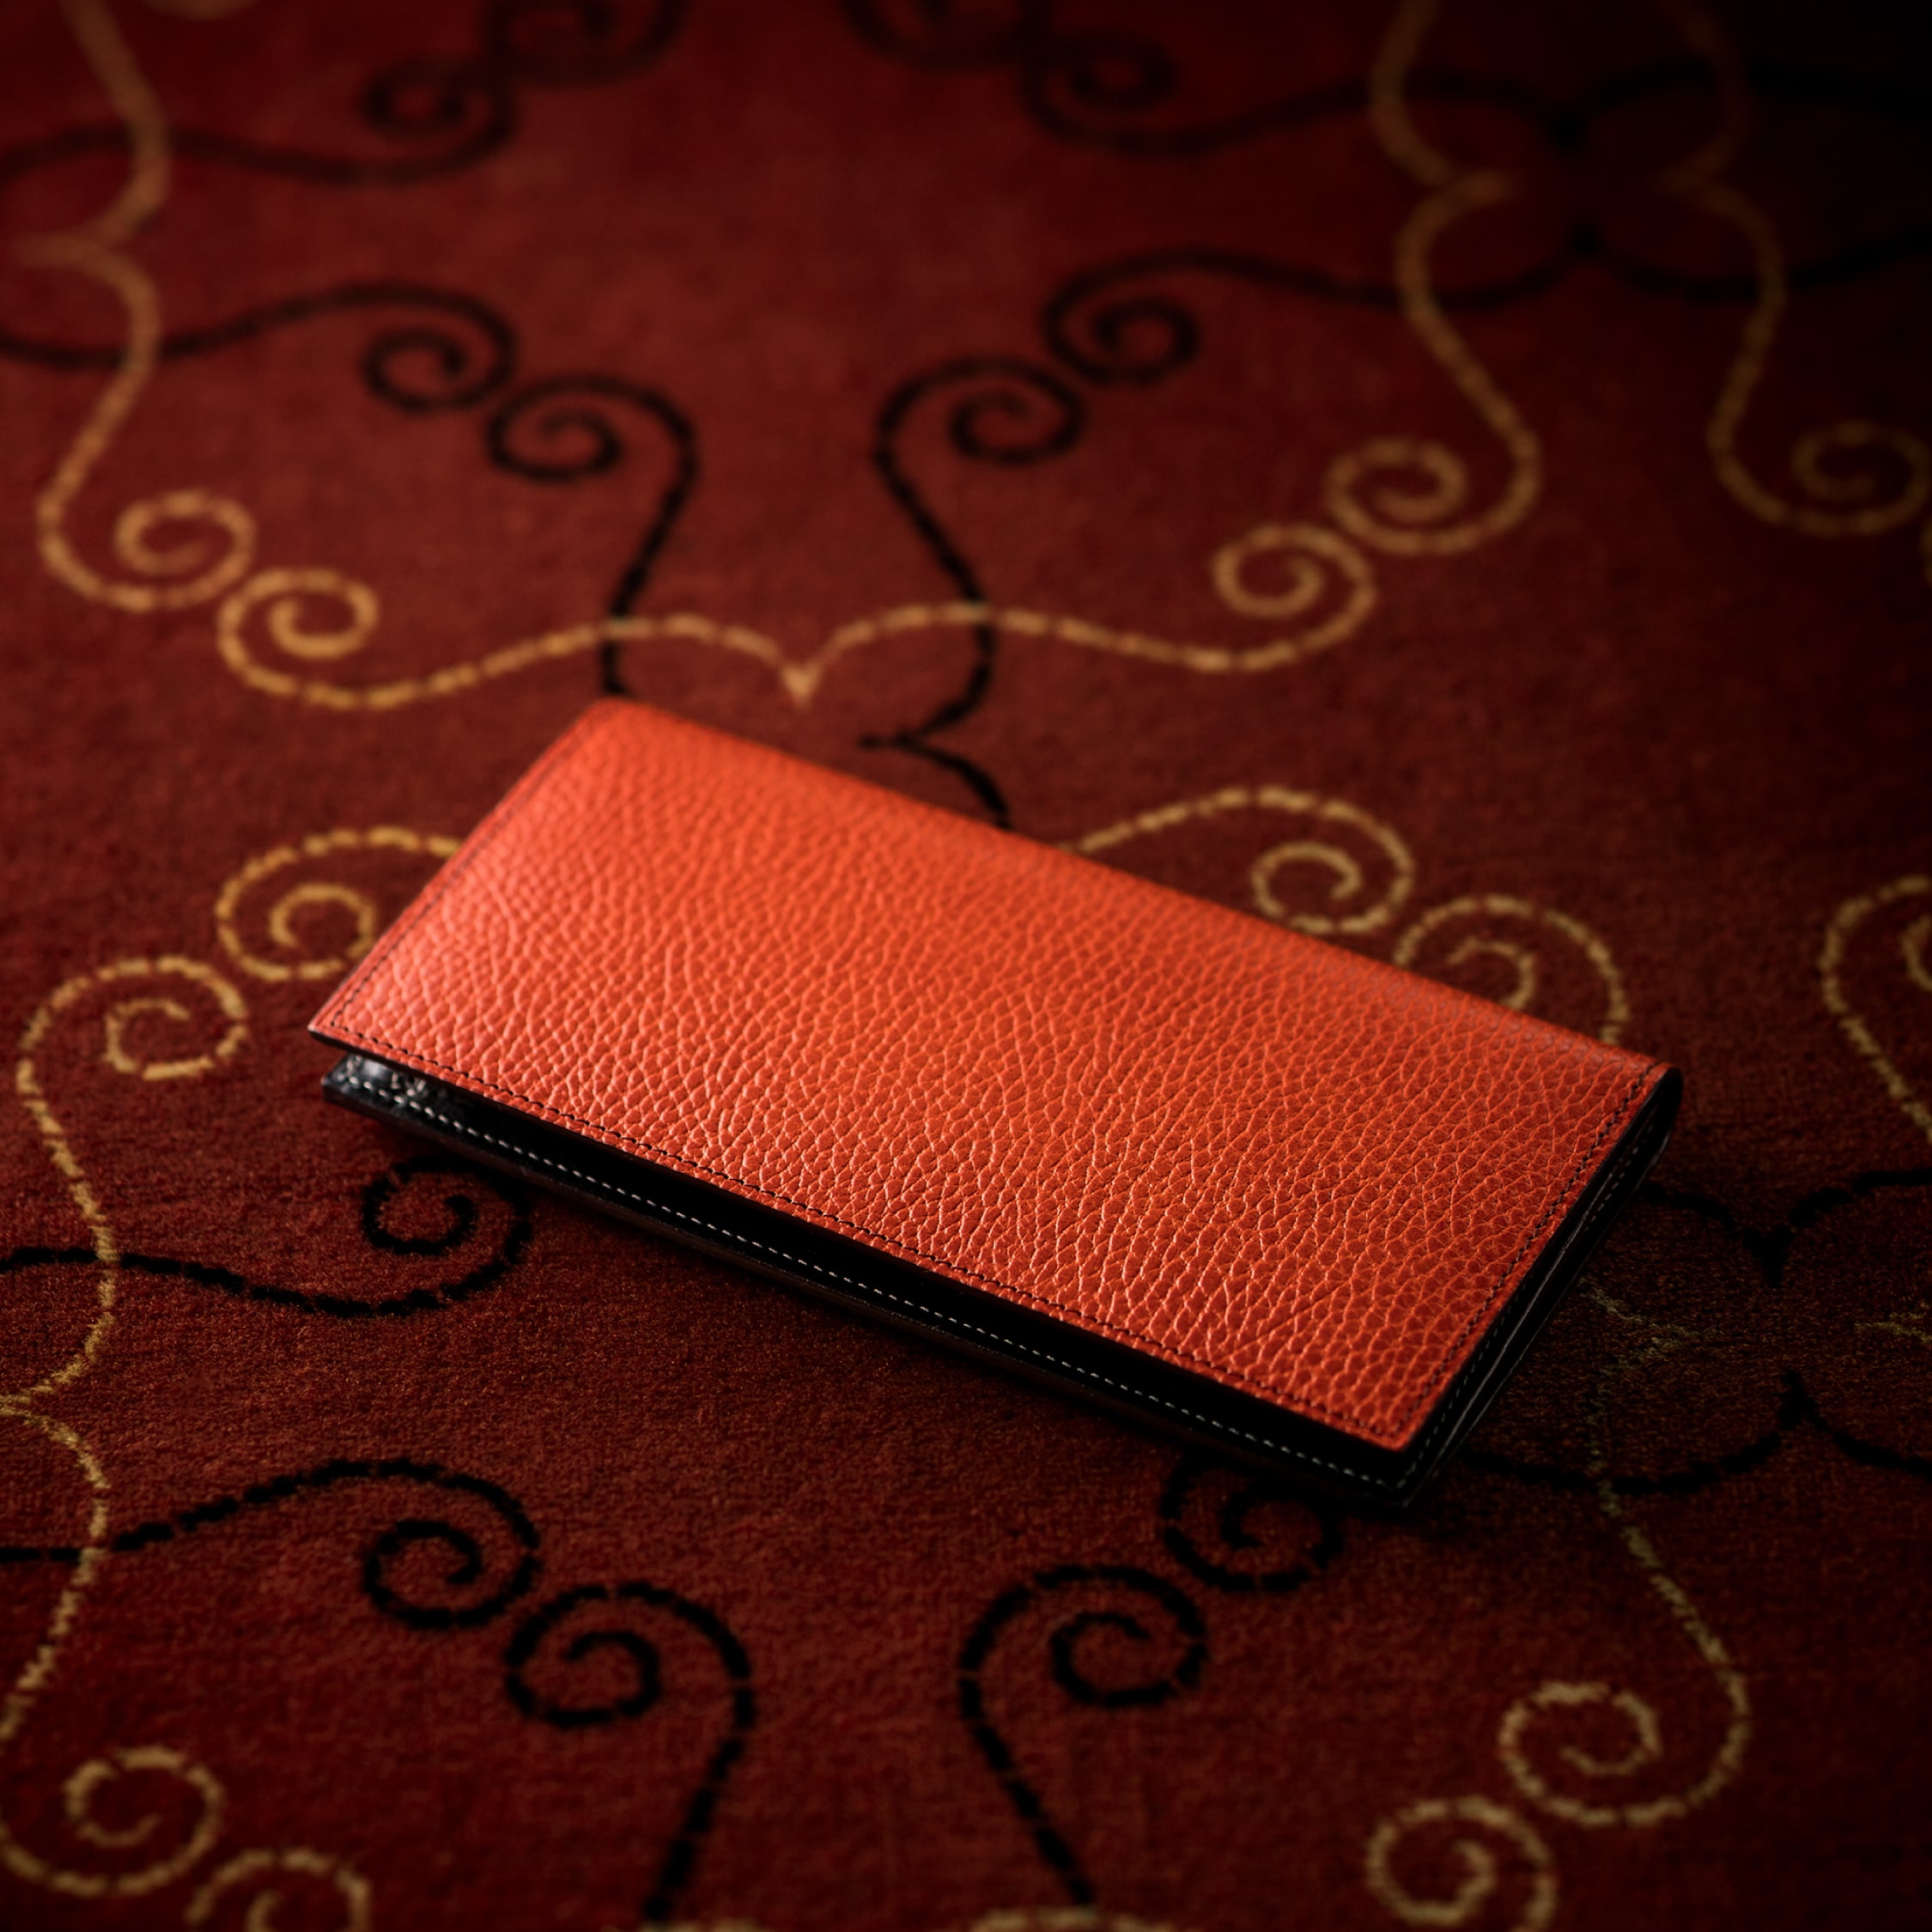 ロッソピエトラ 薄型長財布 | ココマイスター公式サイト